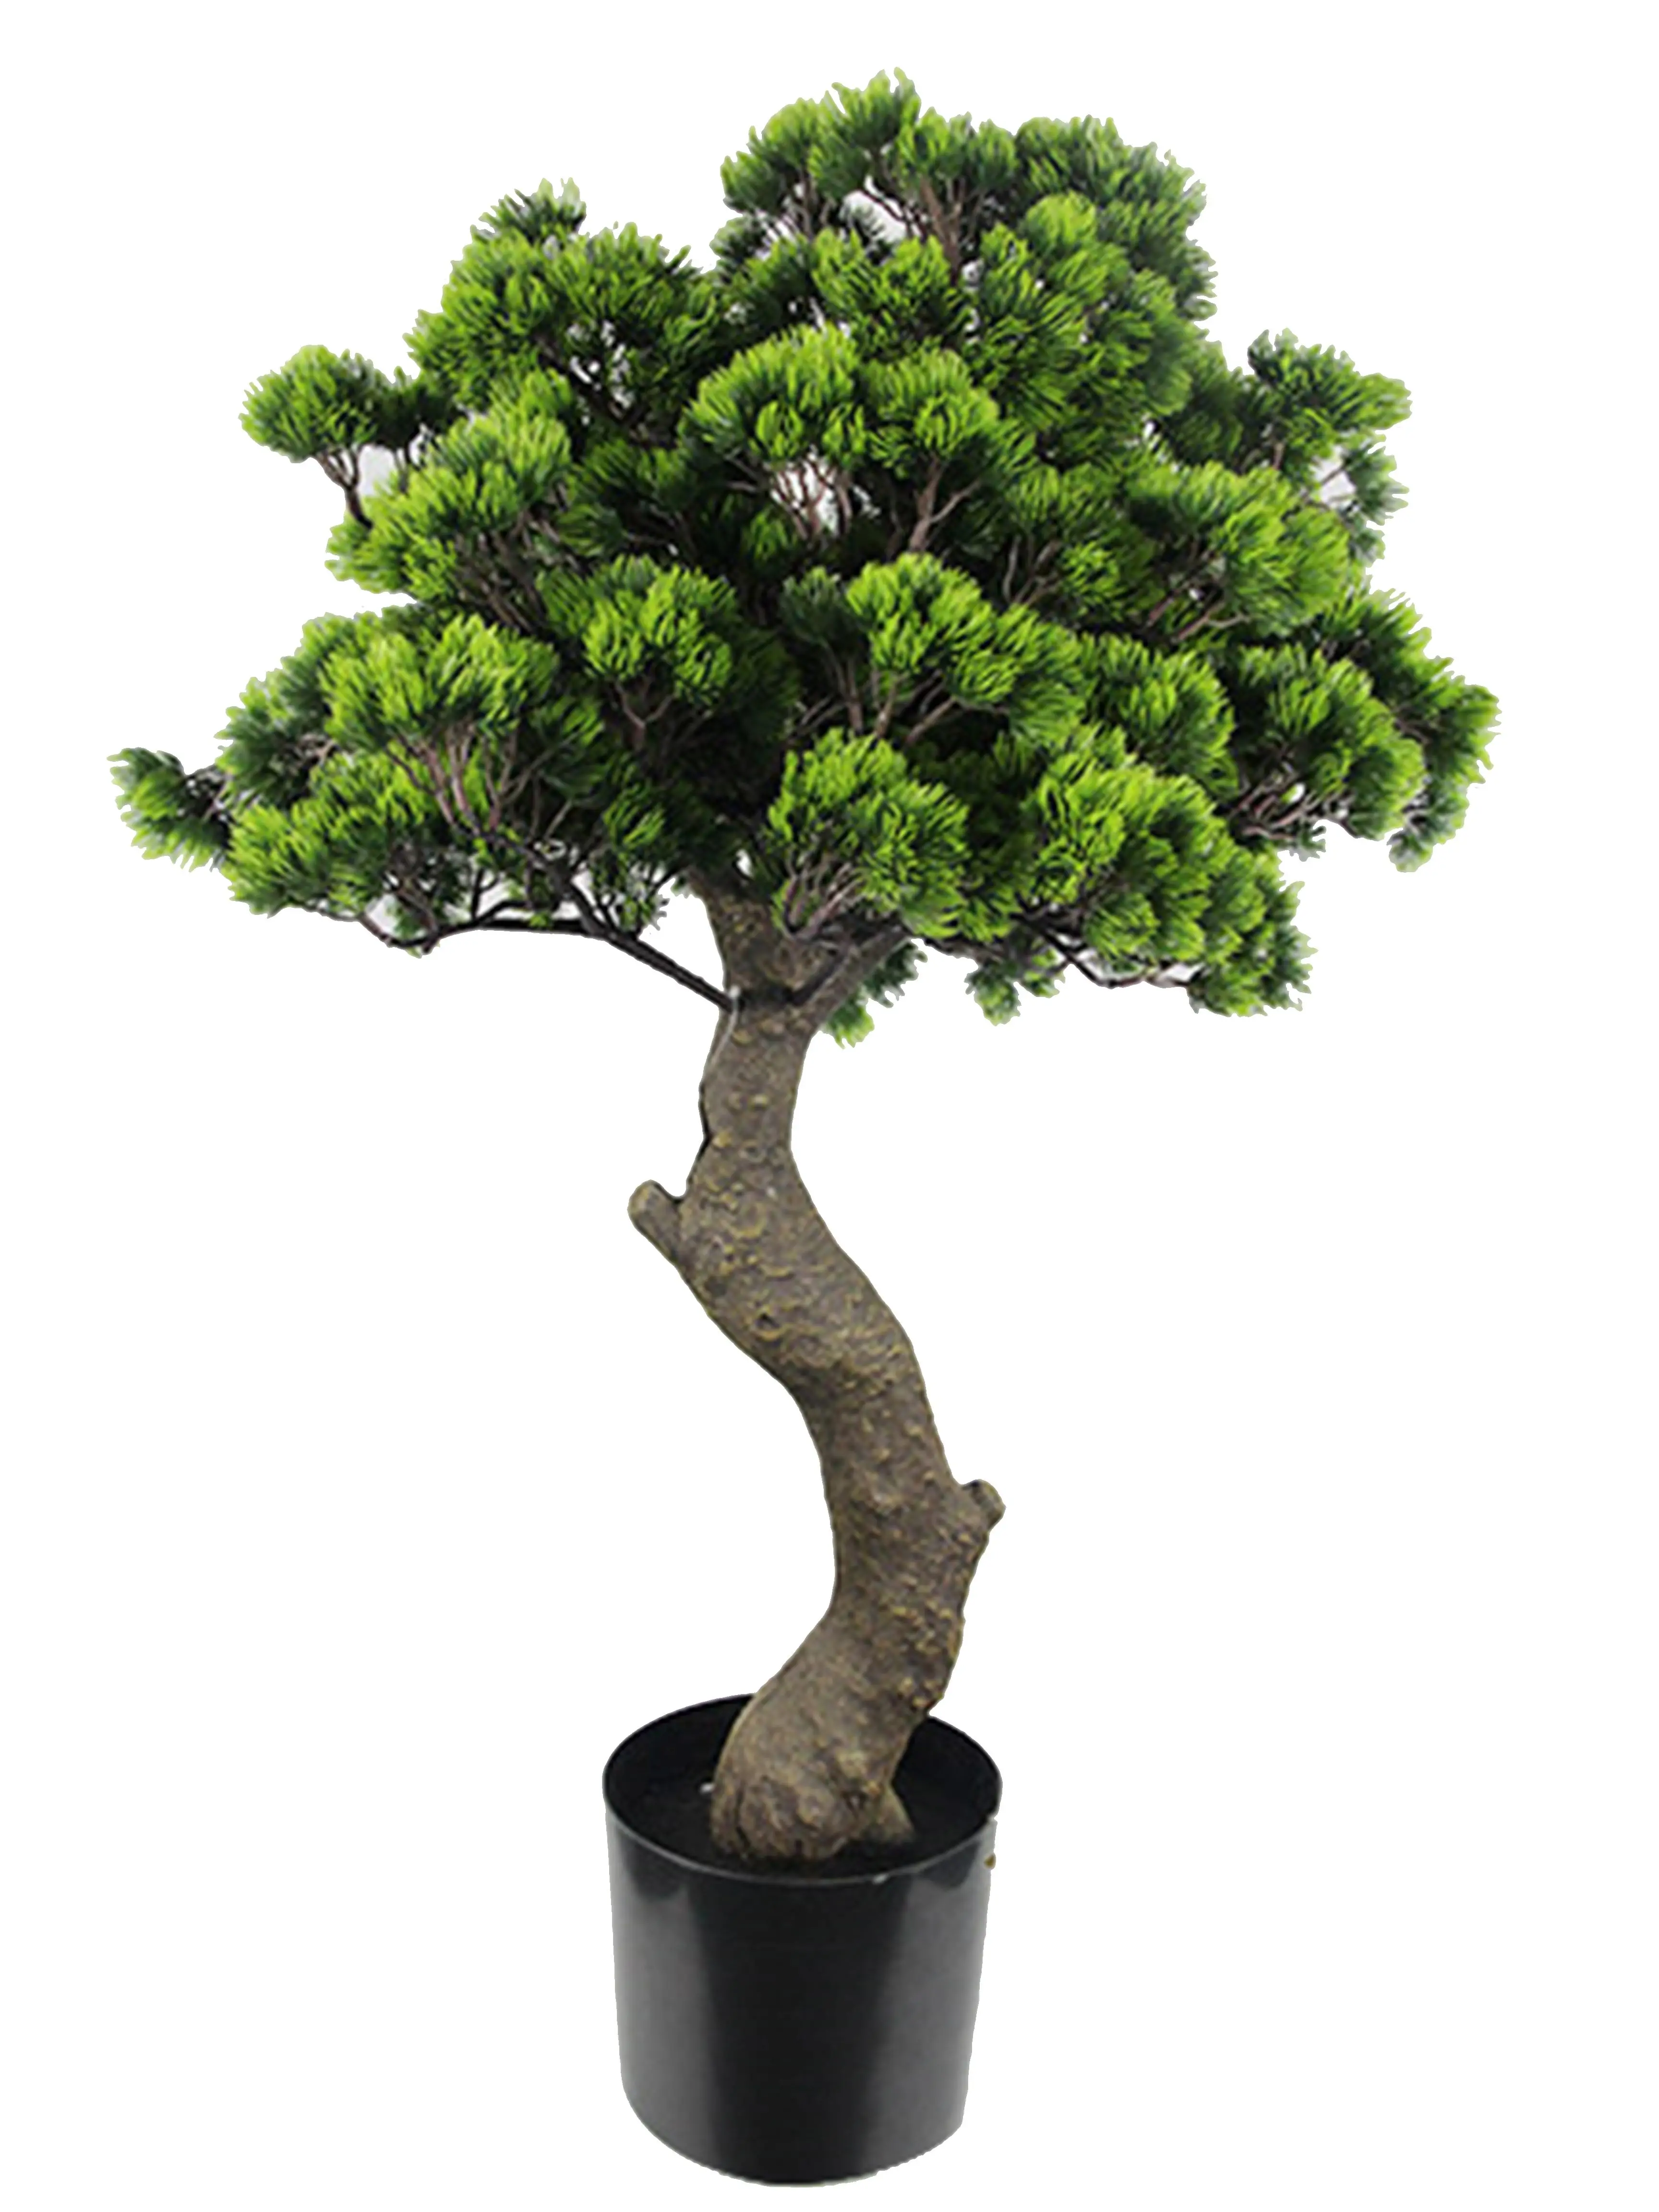 高品质人造植物迎宾松盆景树顶级销售植物装饰室内室外 buy bonsai